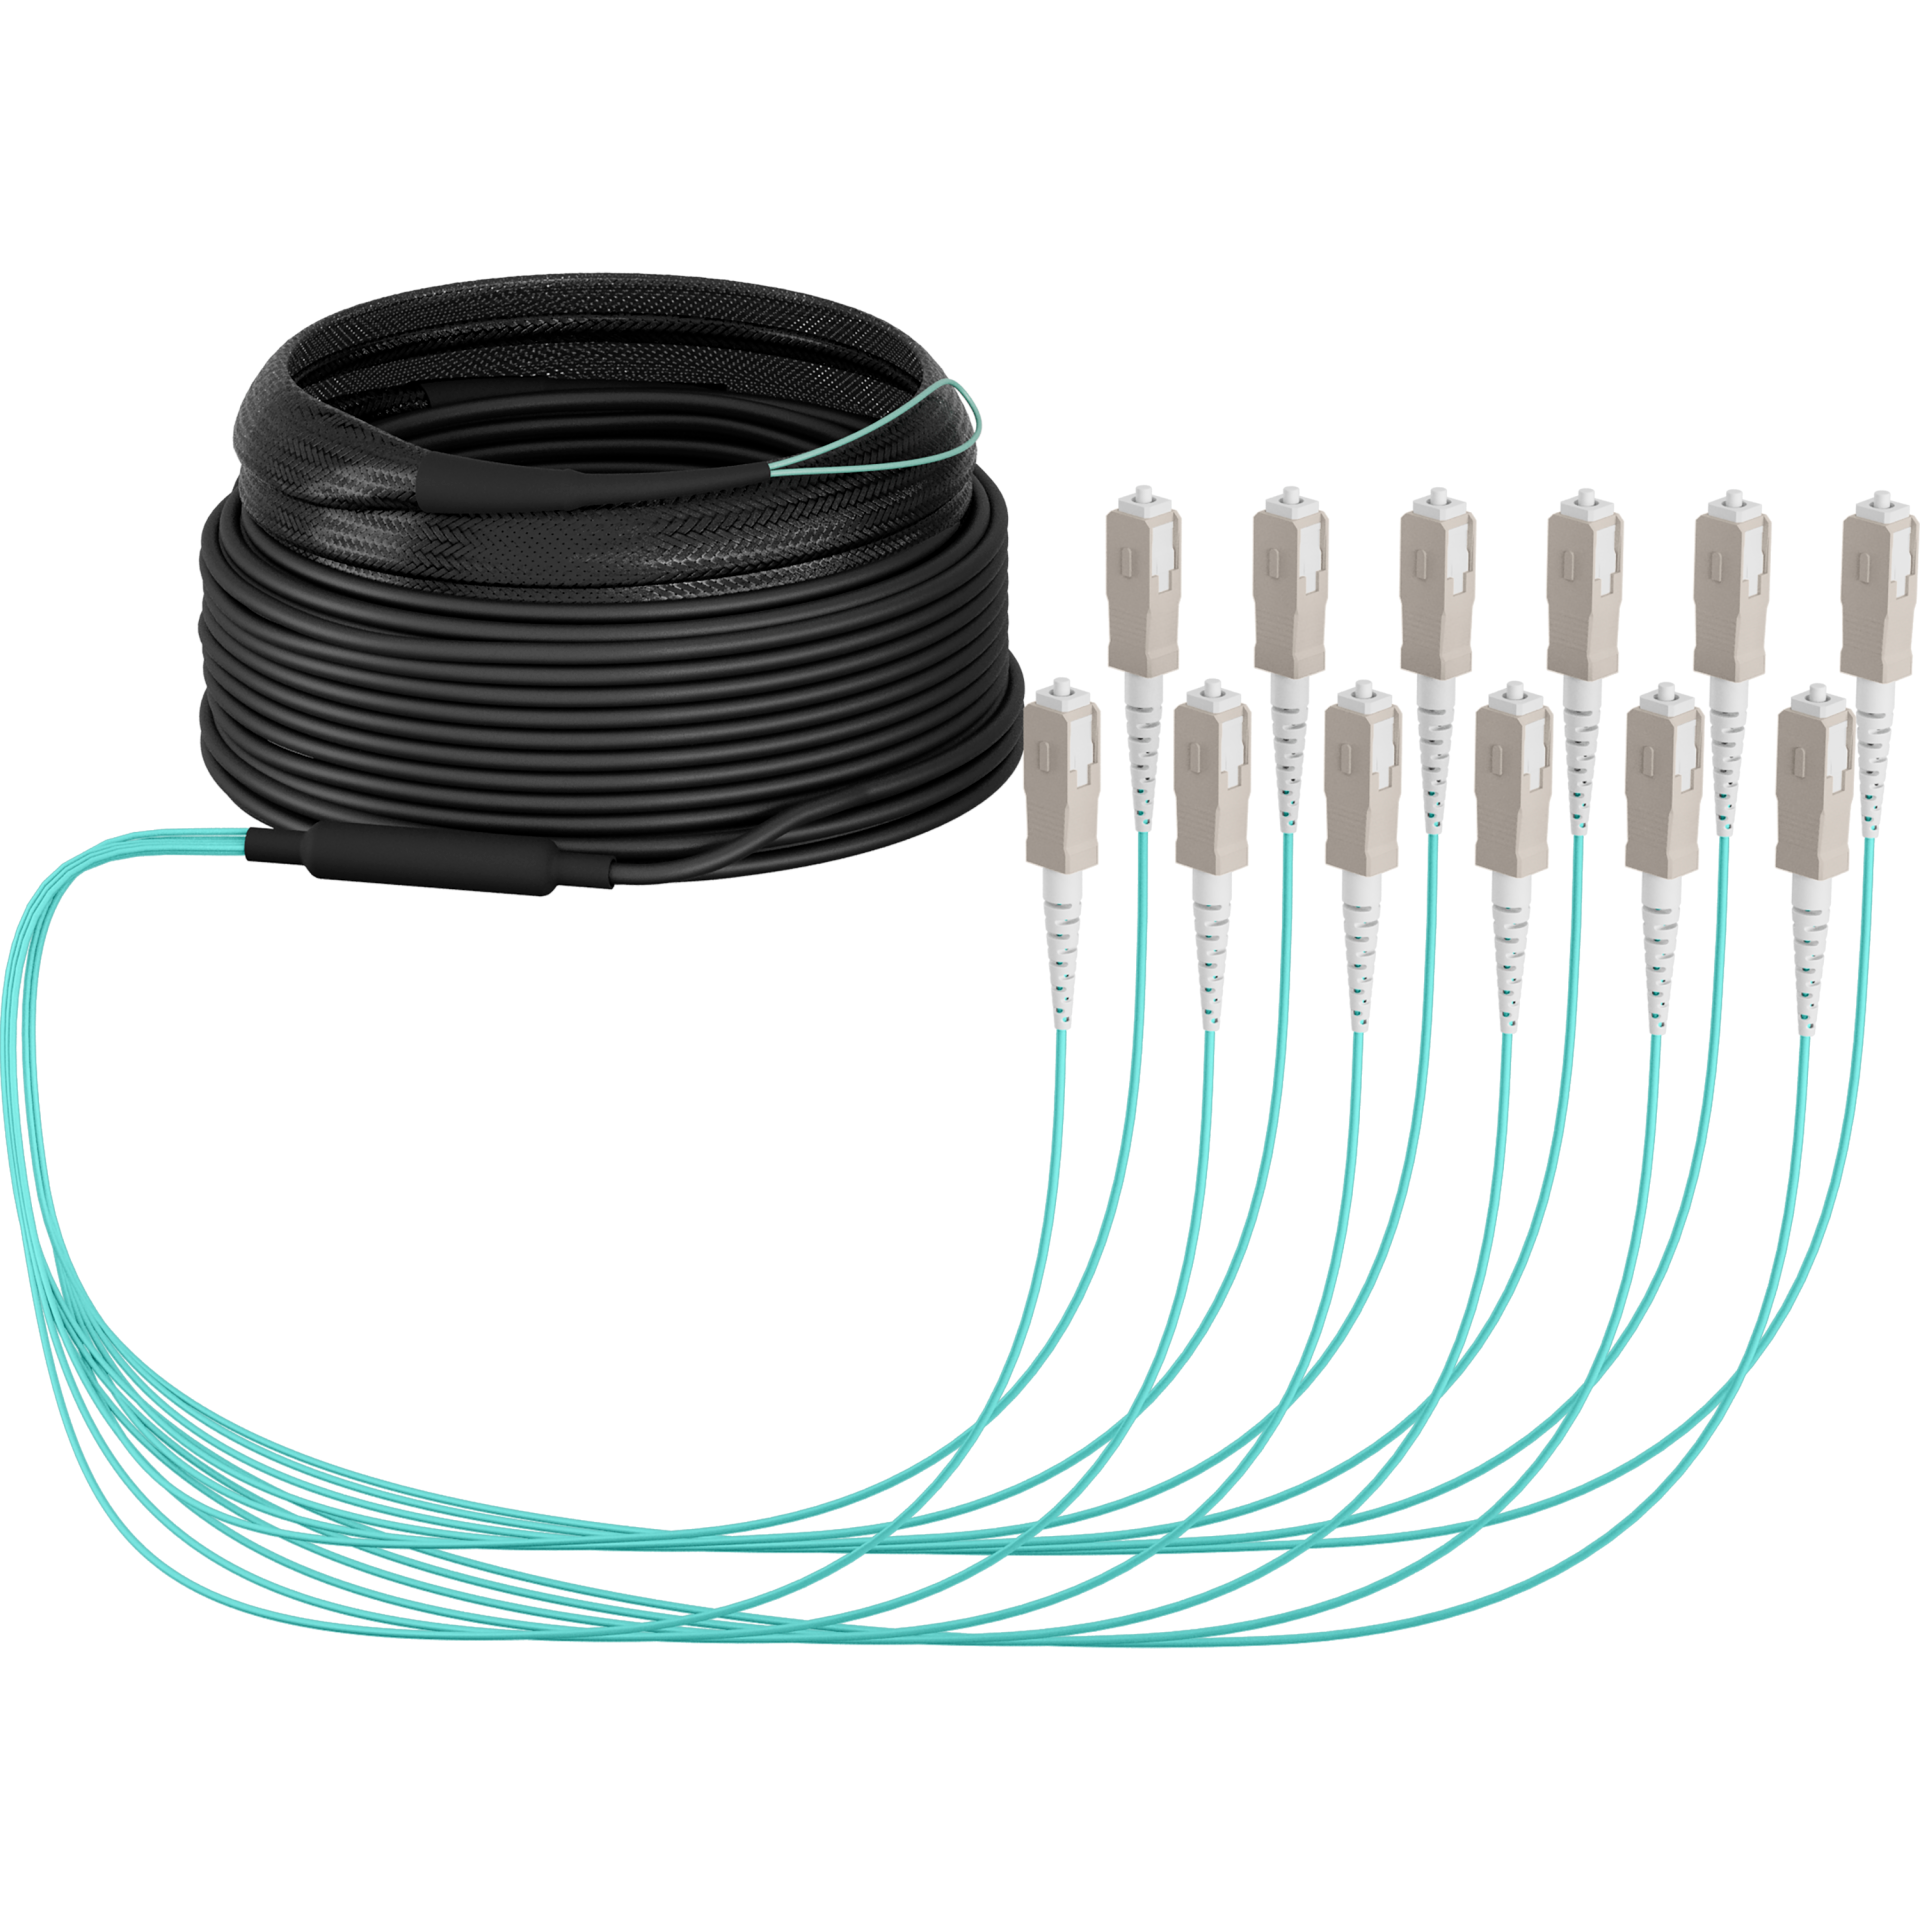 Trunk cable U-DQ(ZN)BH OM3 12G (1x12) SC-SC,30m Dca LSZH